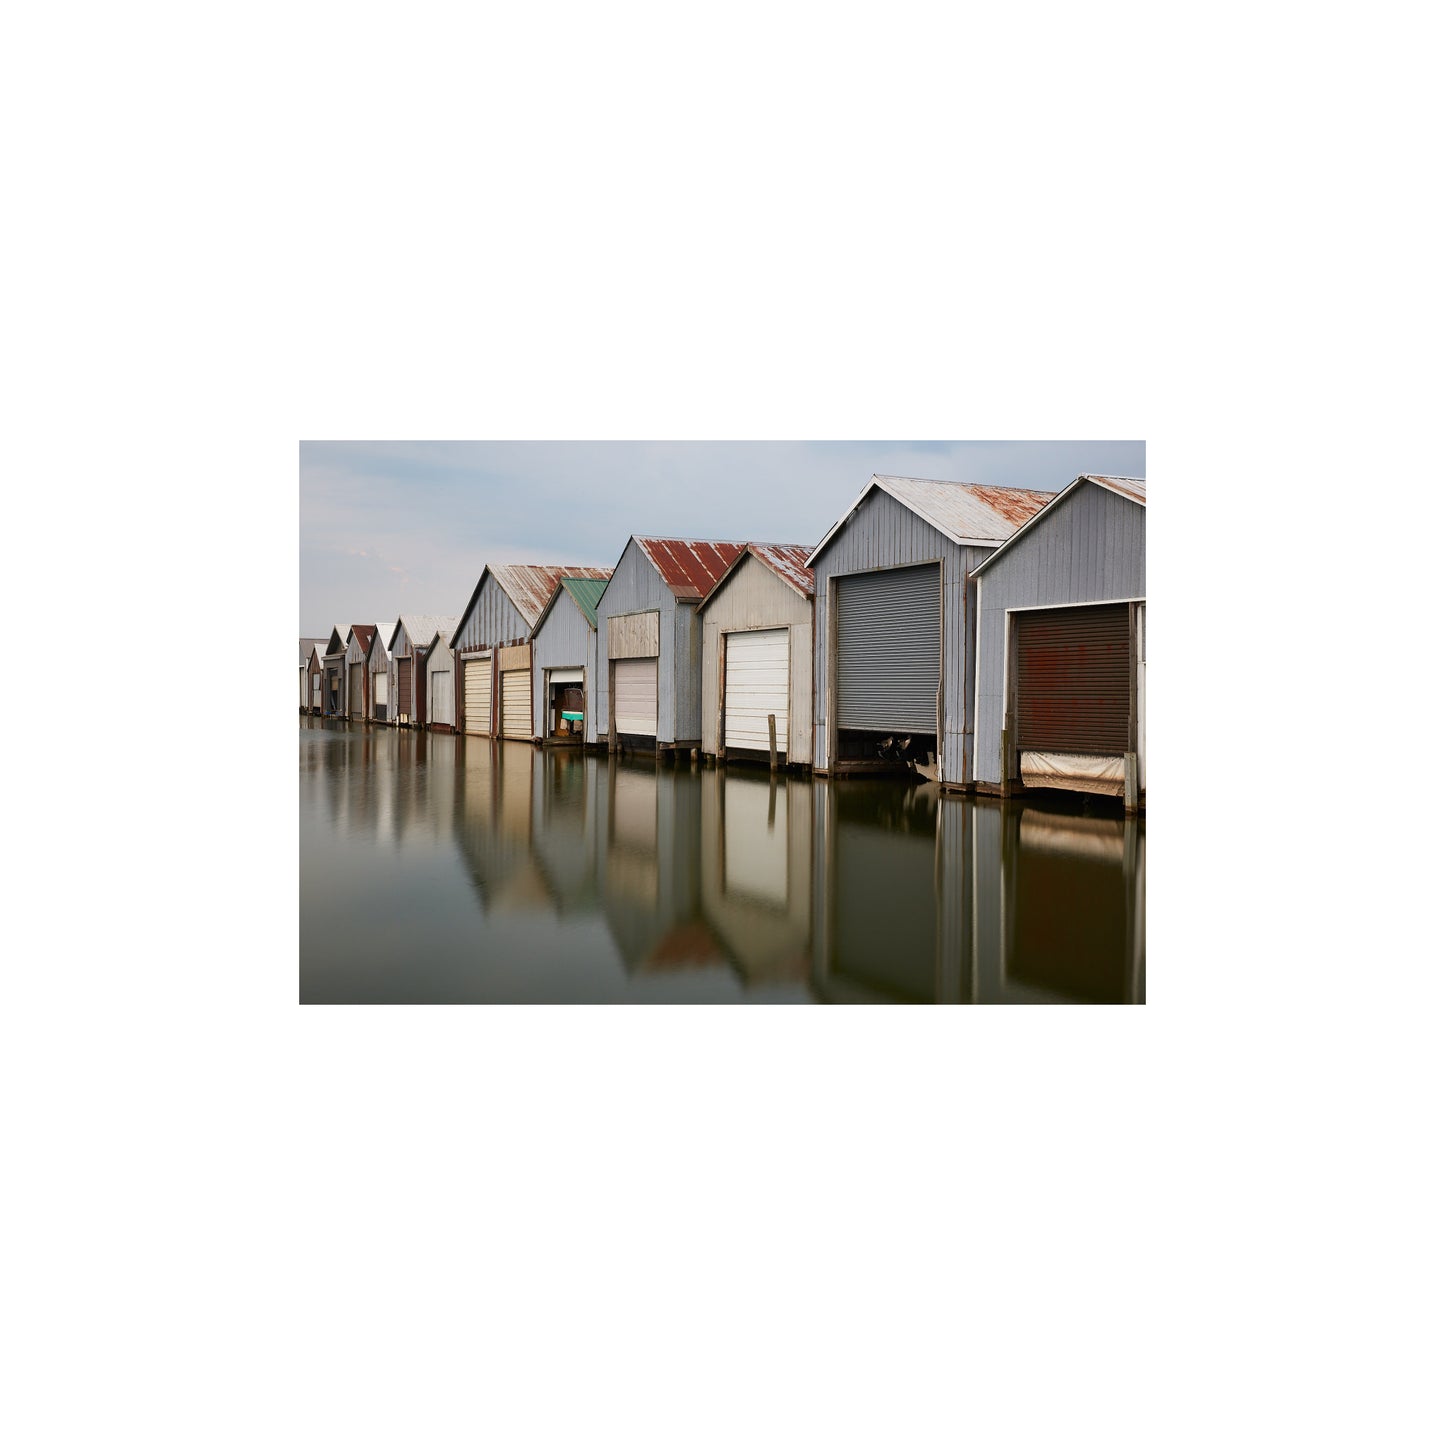 Port Rowan Boat Houses by Paul Lambert